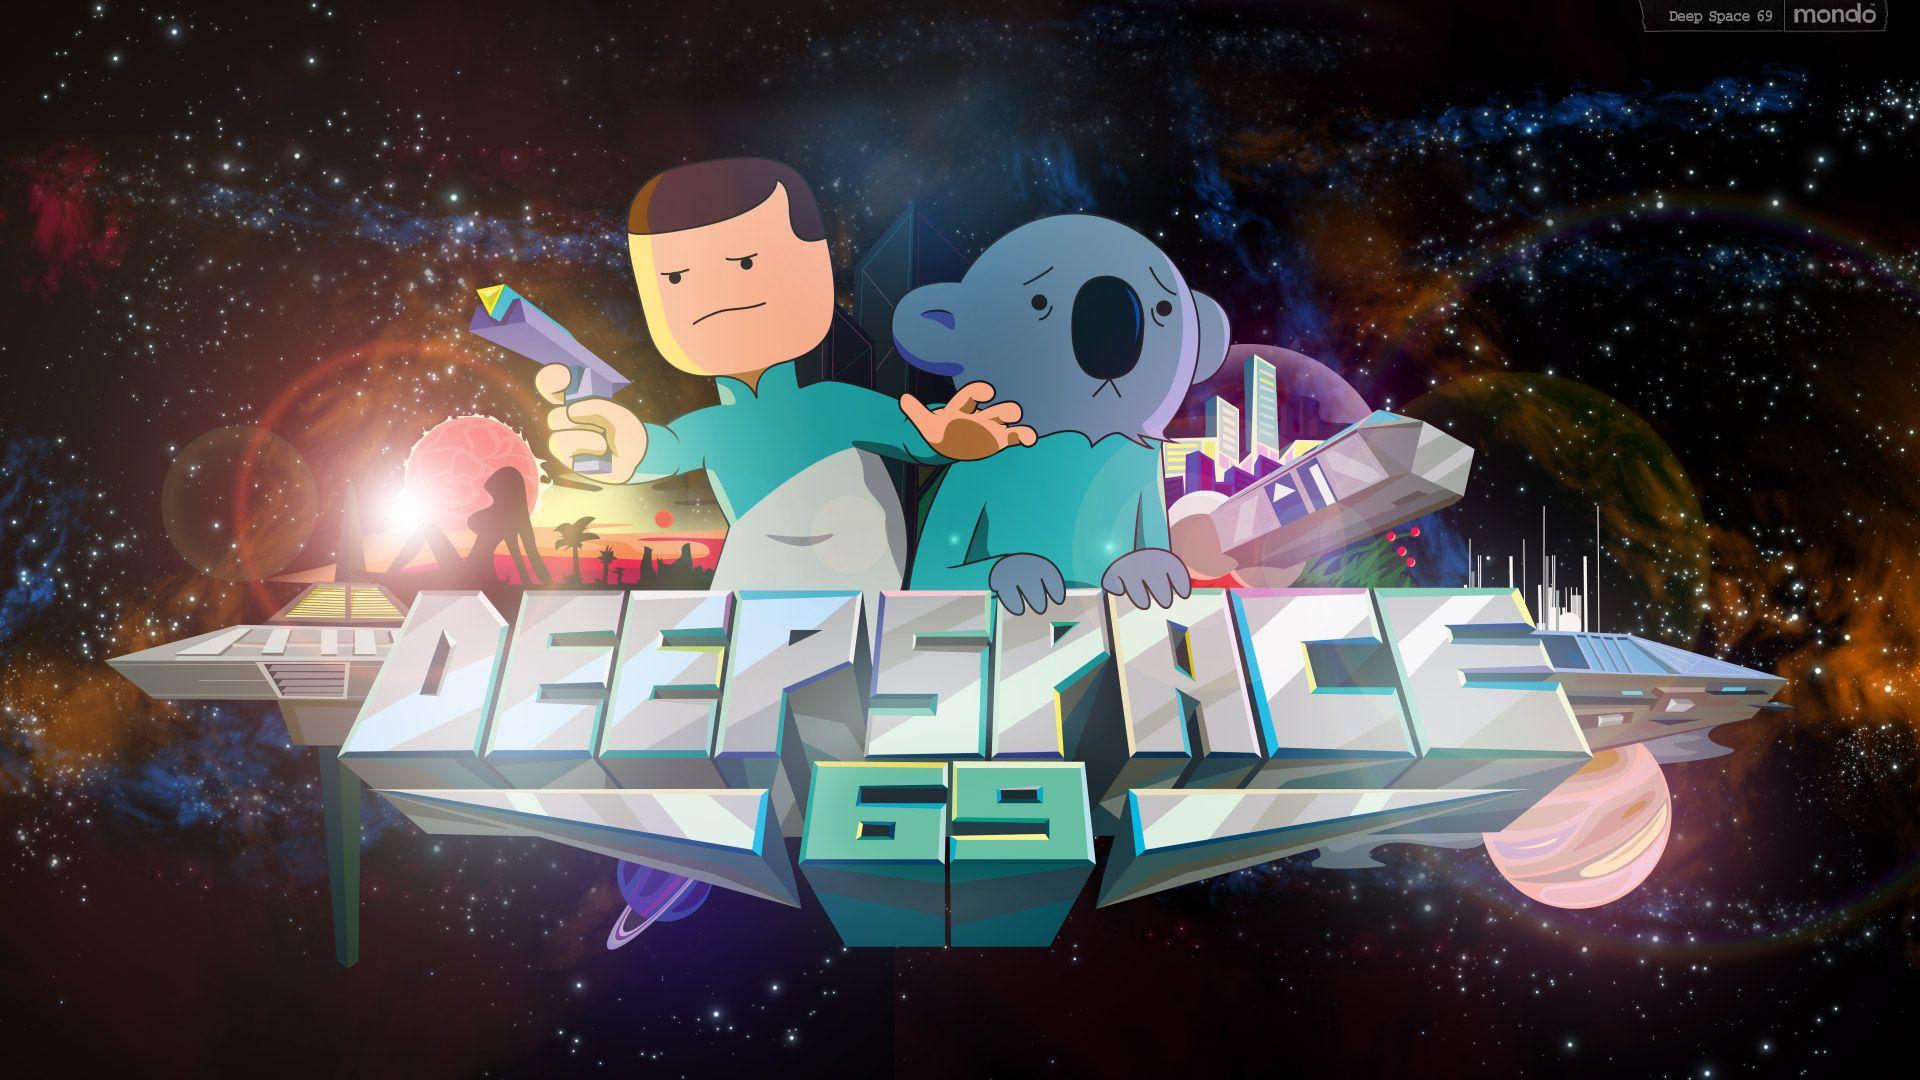 Deep Space 69: Digital Wallpaper! Space 69